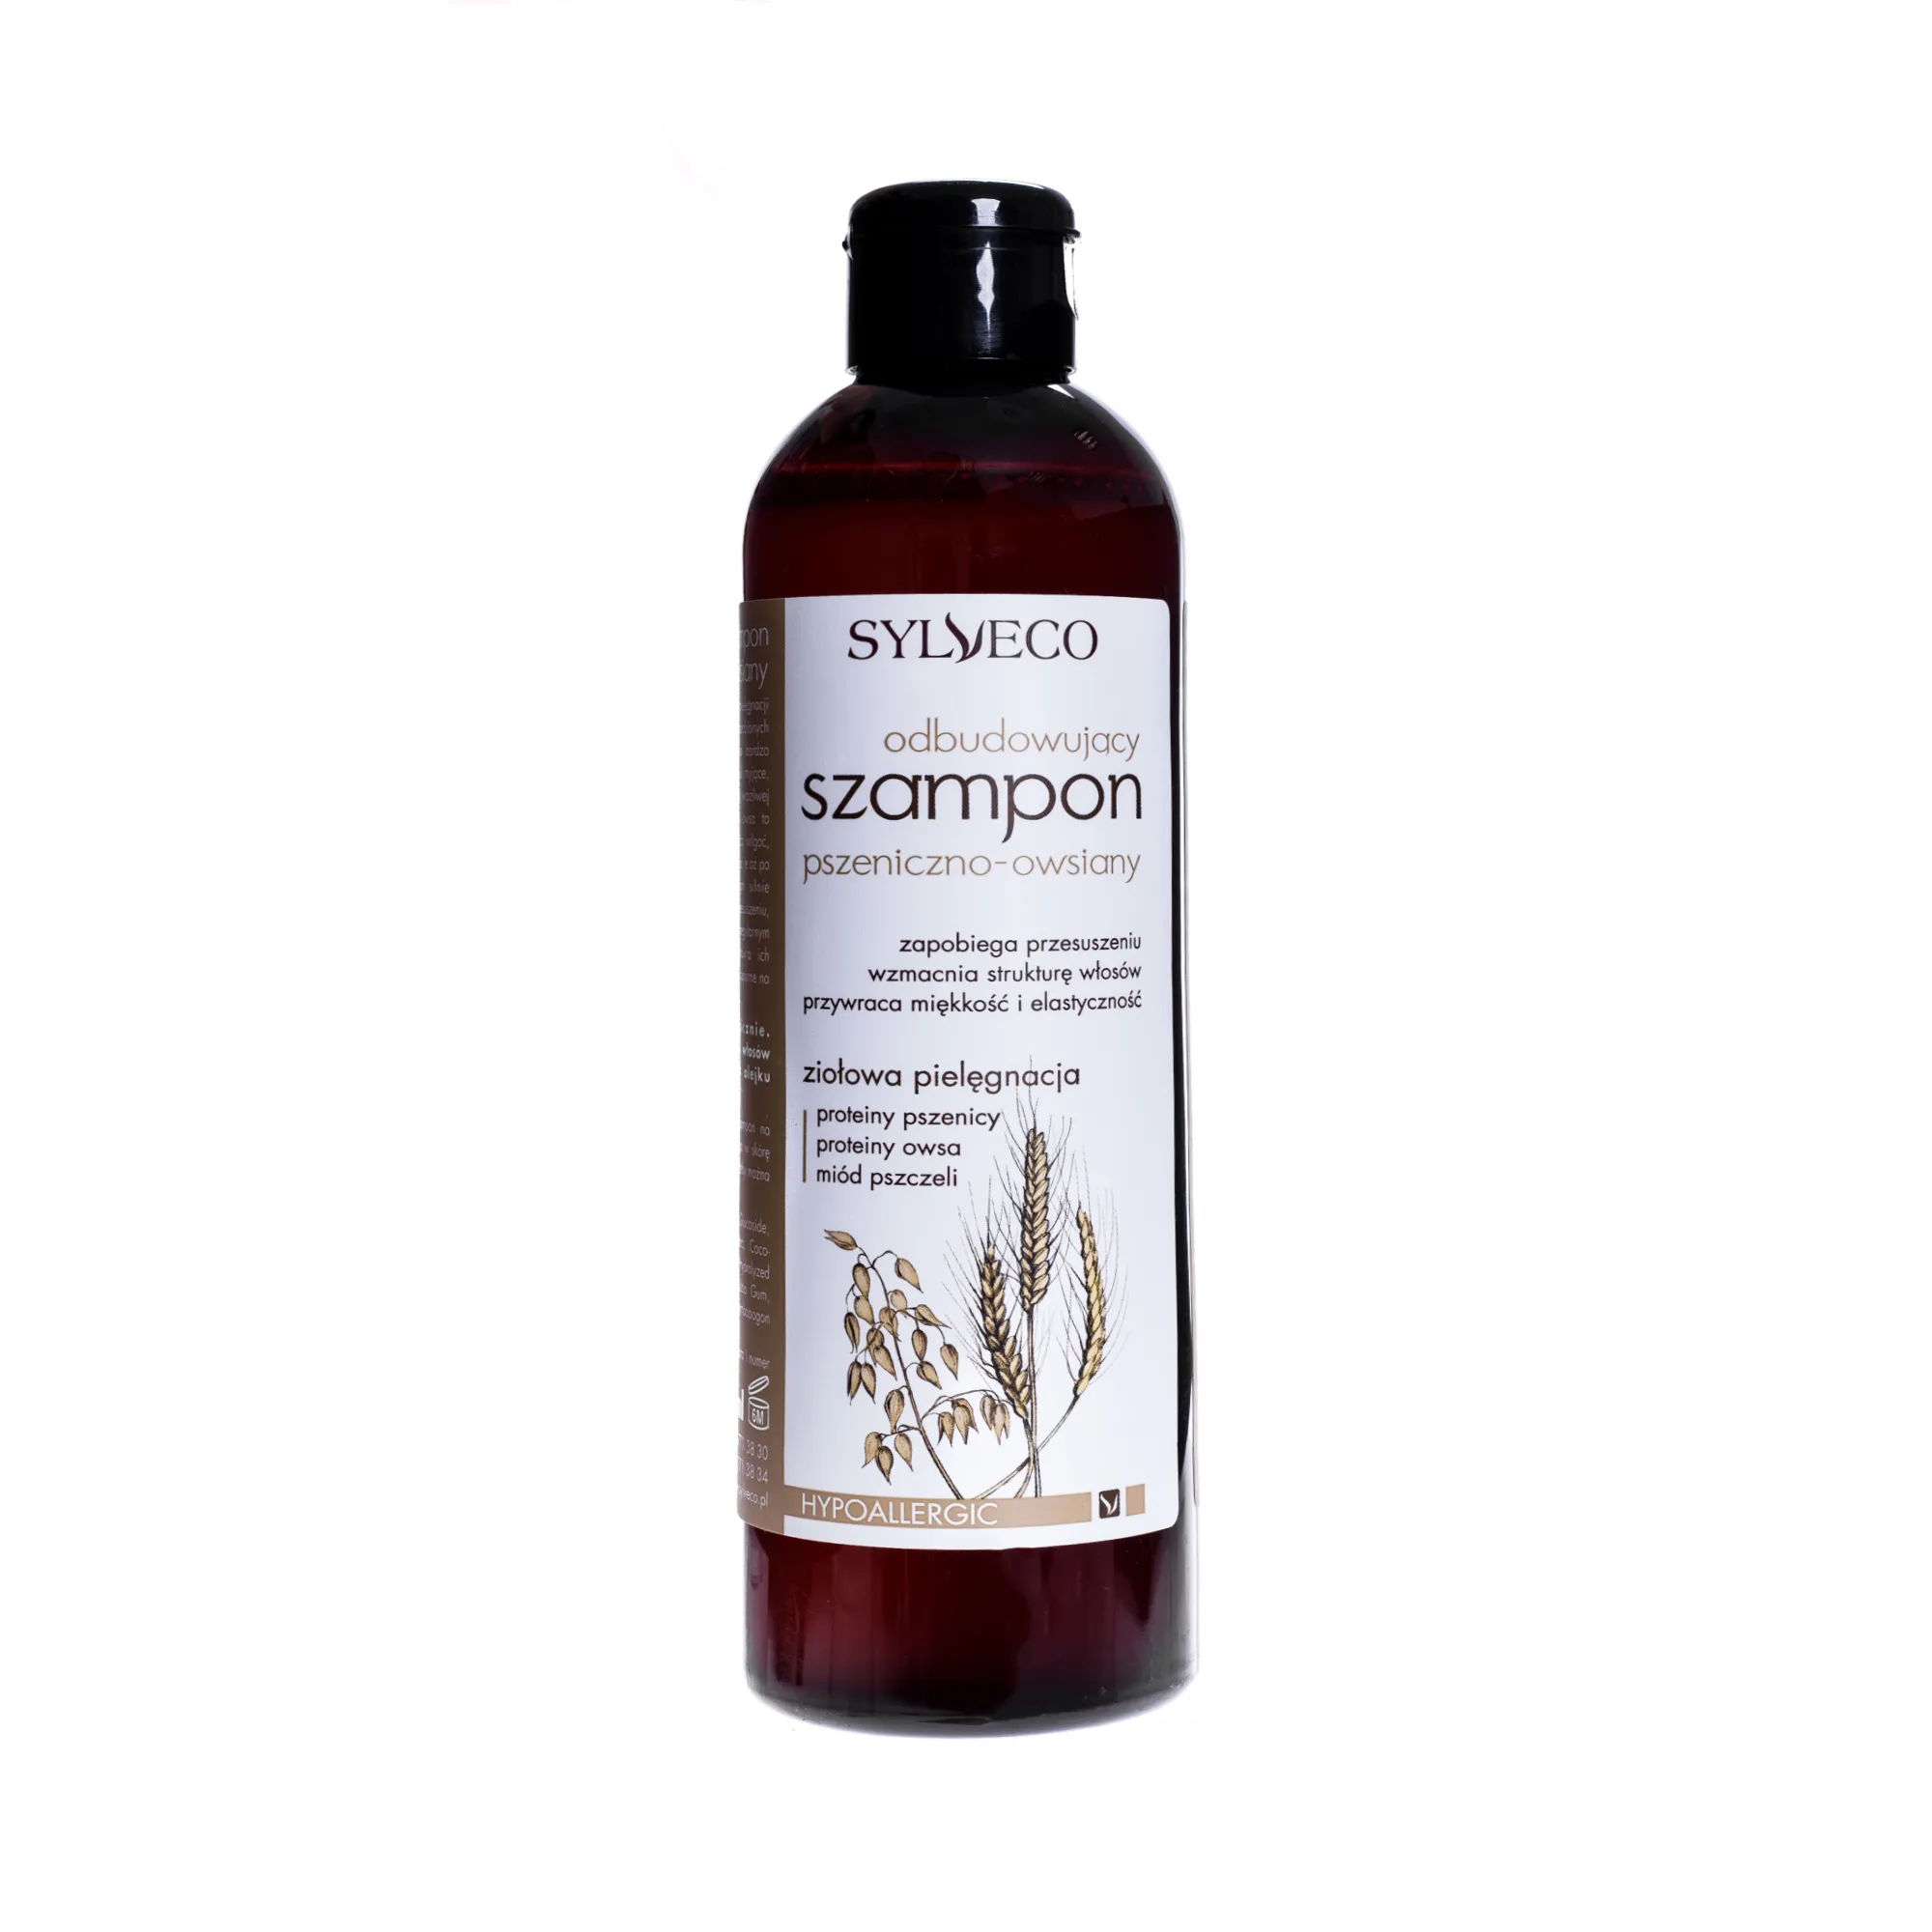 Sylveco,  odbudowujący szampon pszeniczno-owsiany, 300 ml